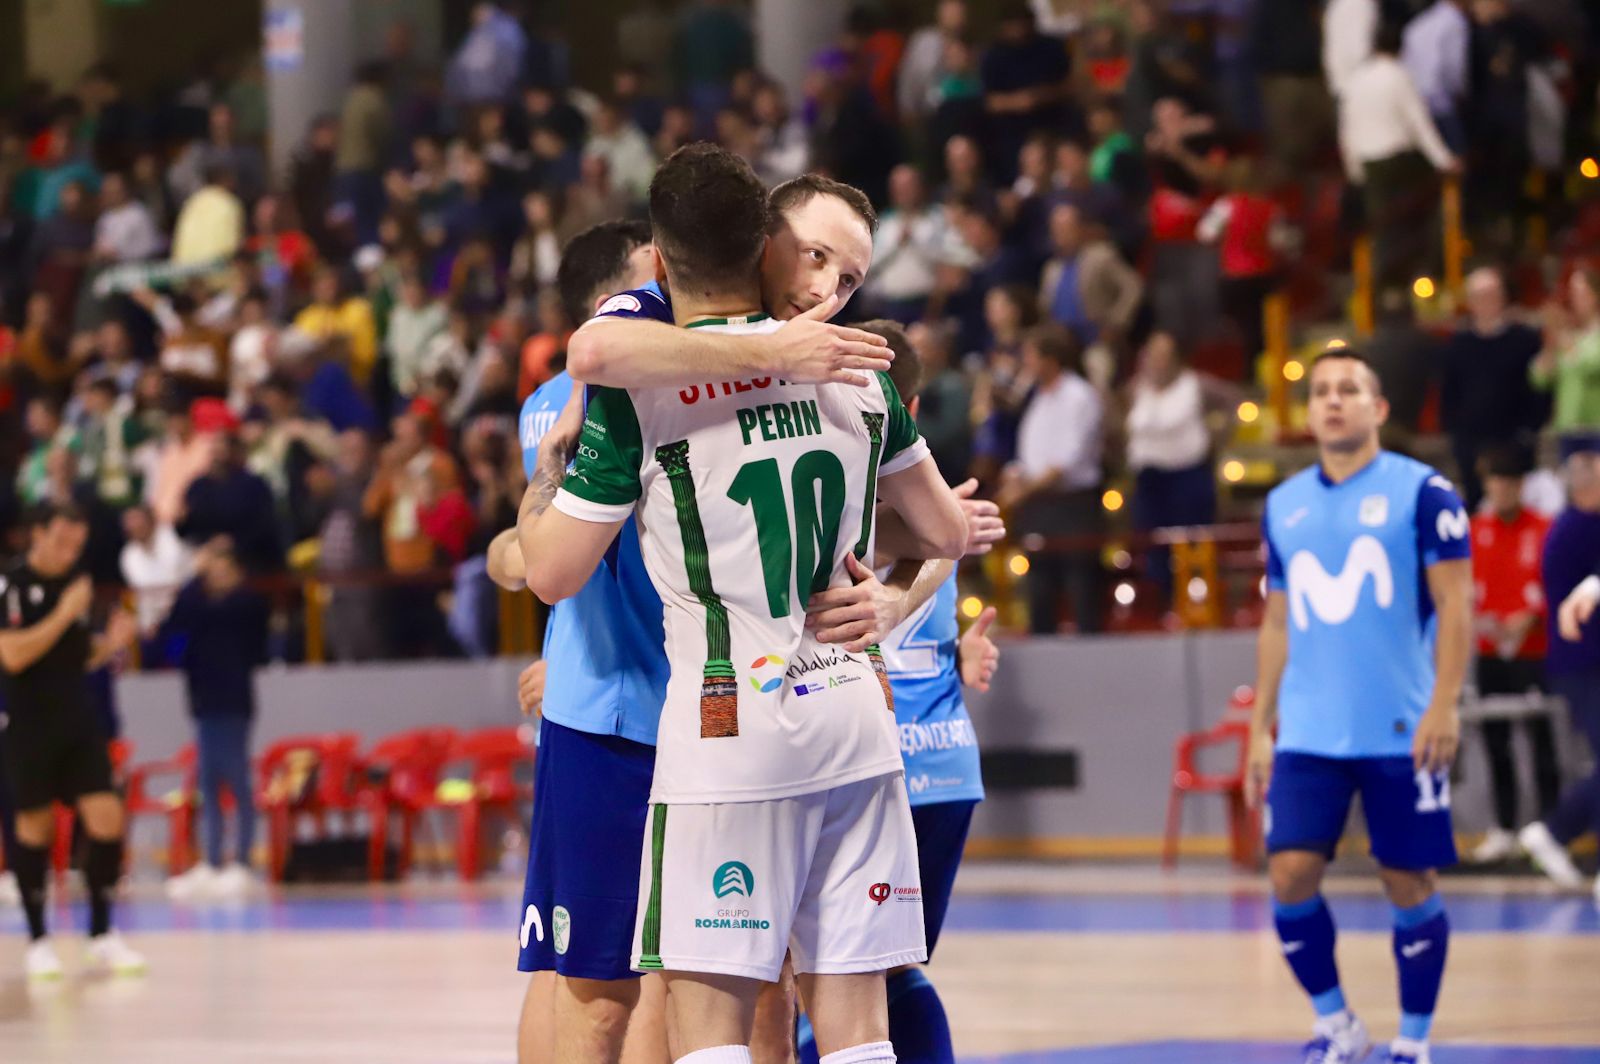 Córdoba Futsal - Movistar Inter: las imágenes del partido de Primera División en Vista Alegre